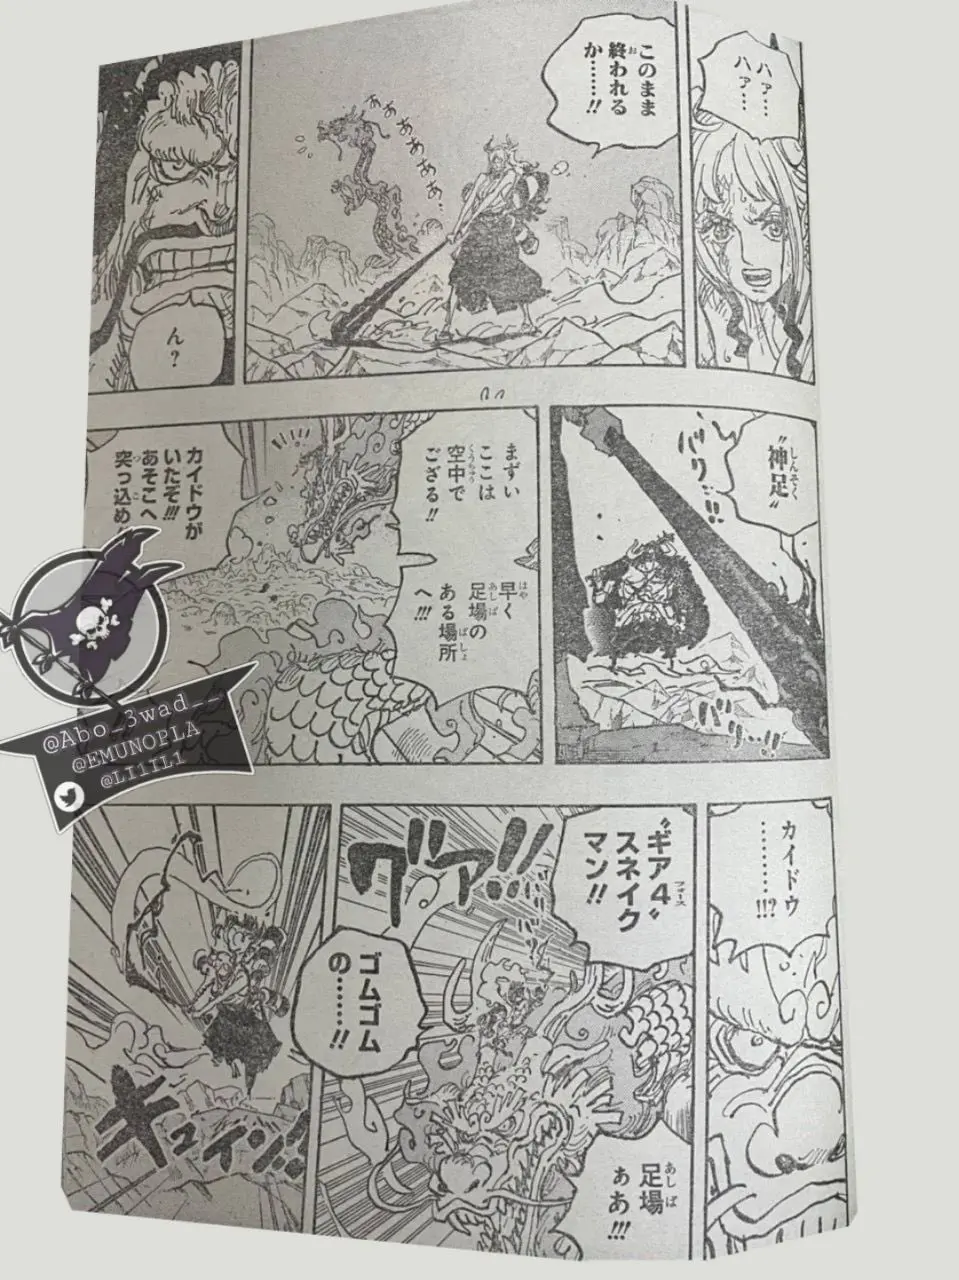 One Piece Manga 1025 Spoiler 012.jpg One Piece 1025 Spoilers: Luffy & Yamato Vs Kaido!